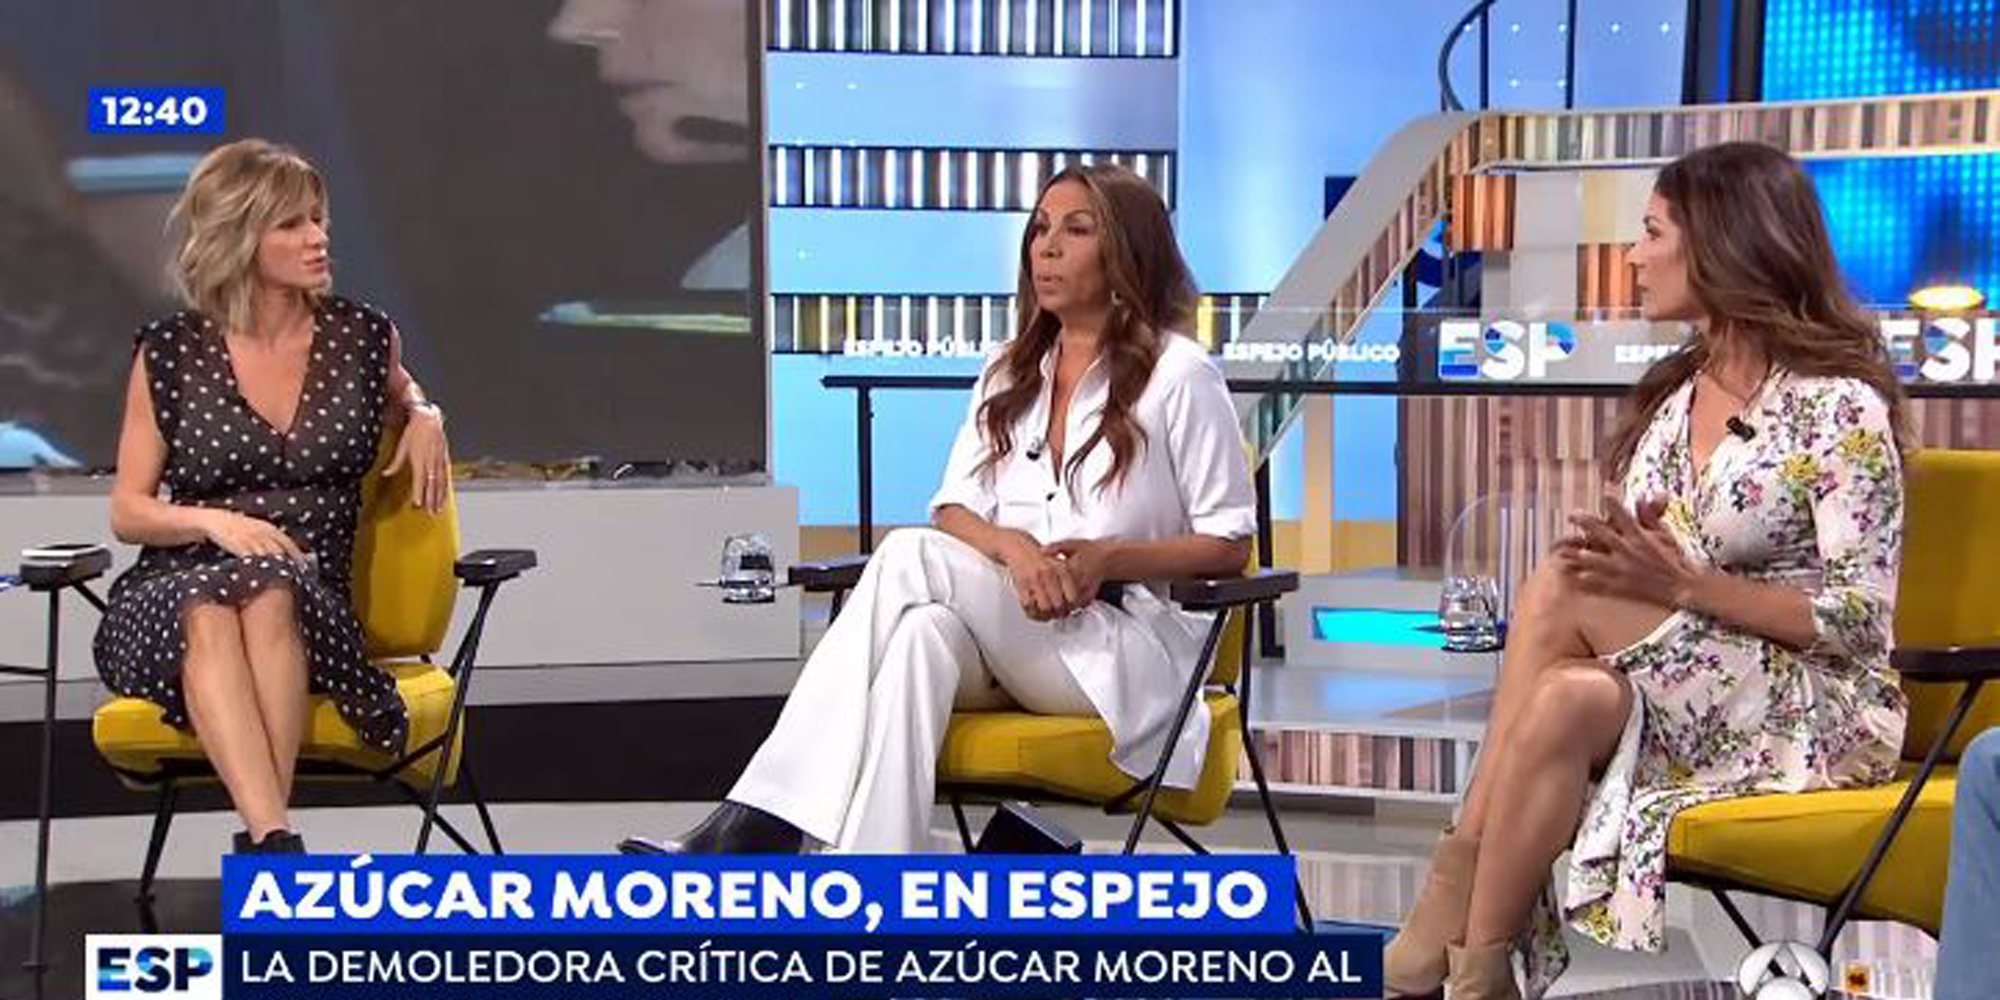 Las Azúcar Moreno arremeten contra Chabelita Pantoja en 'Espejo Público': "Eso no es música"